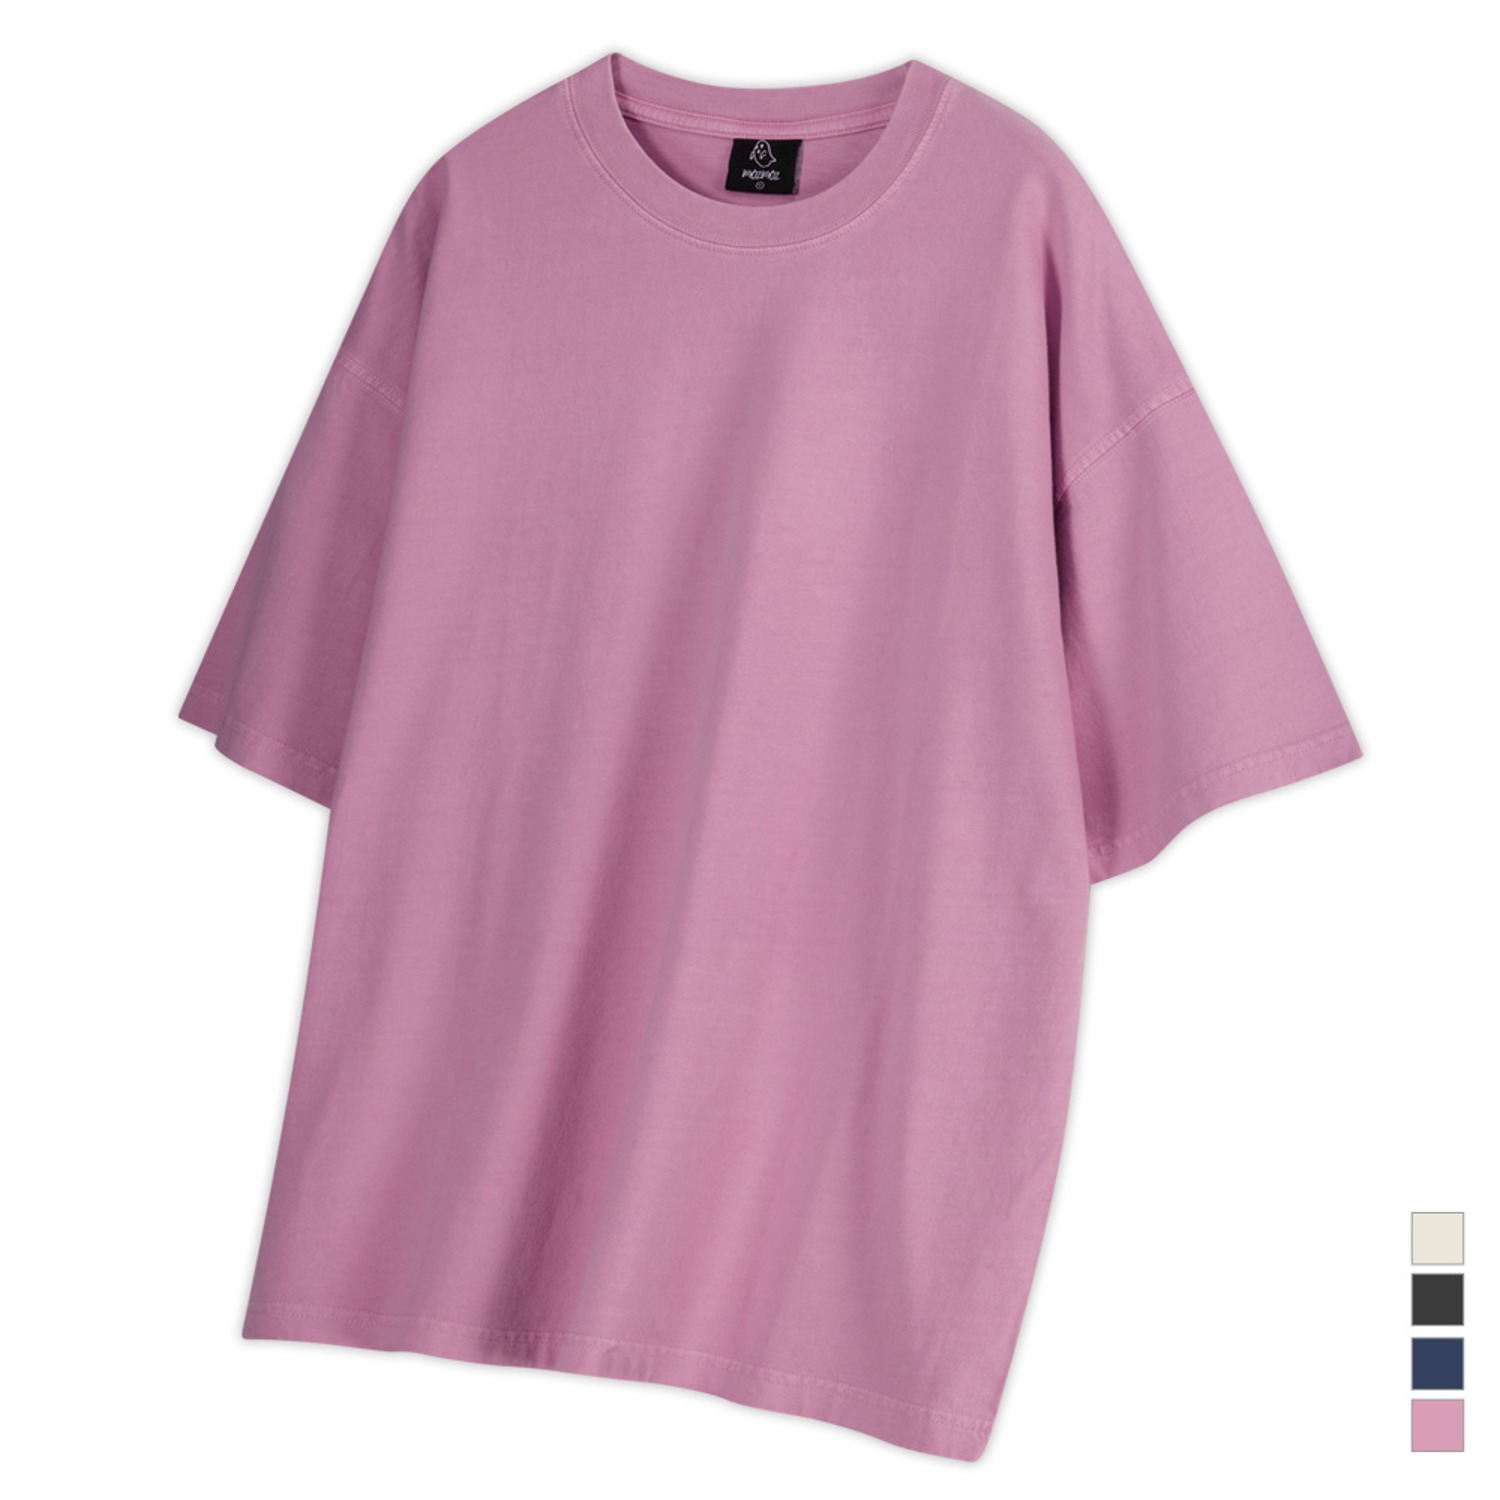 무지 피그먼트 오버핏 반팔티셔츠 핑크